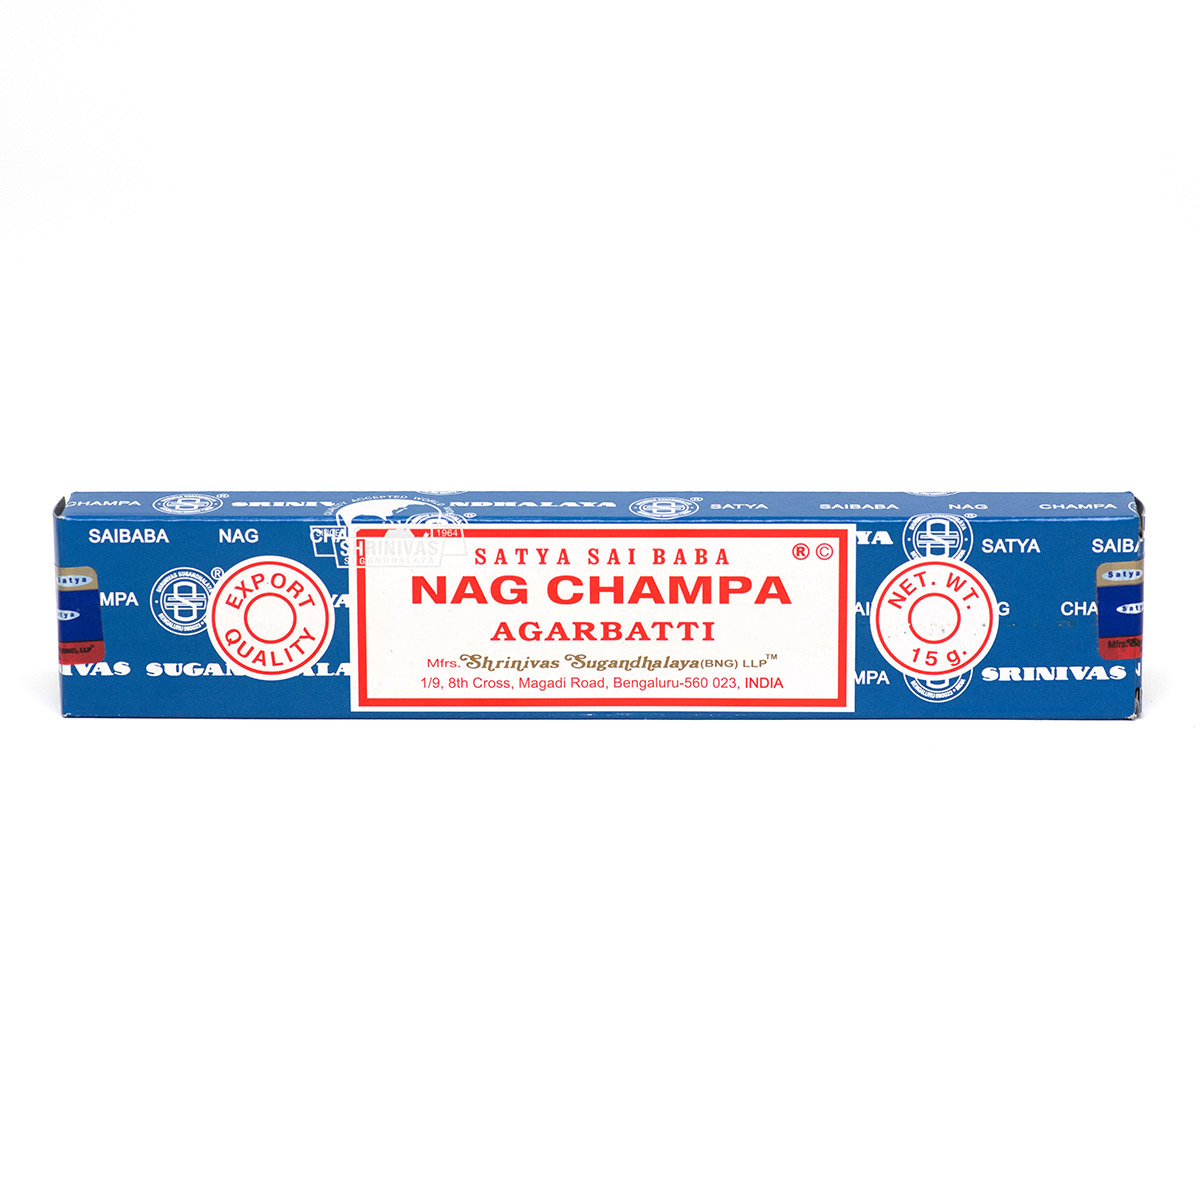 Nag Champa Incense - 15g